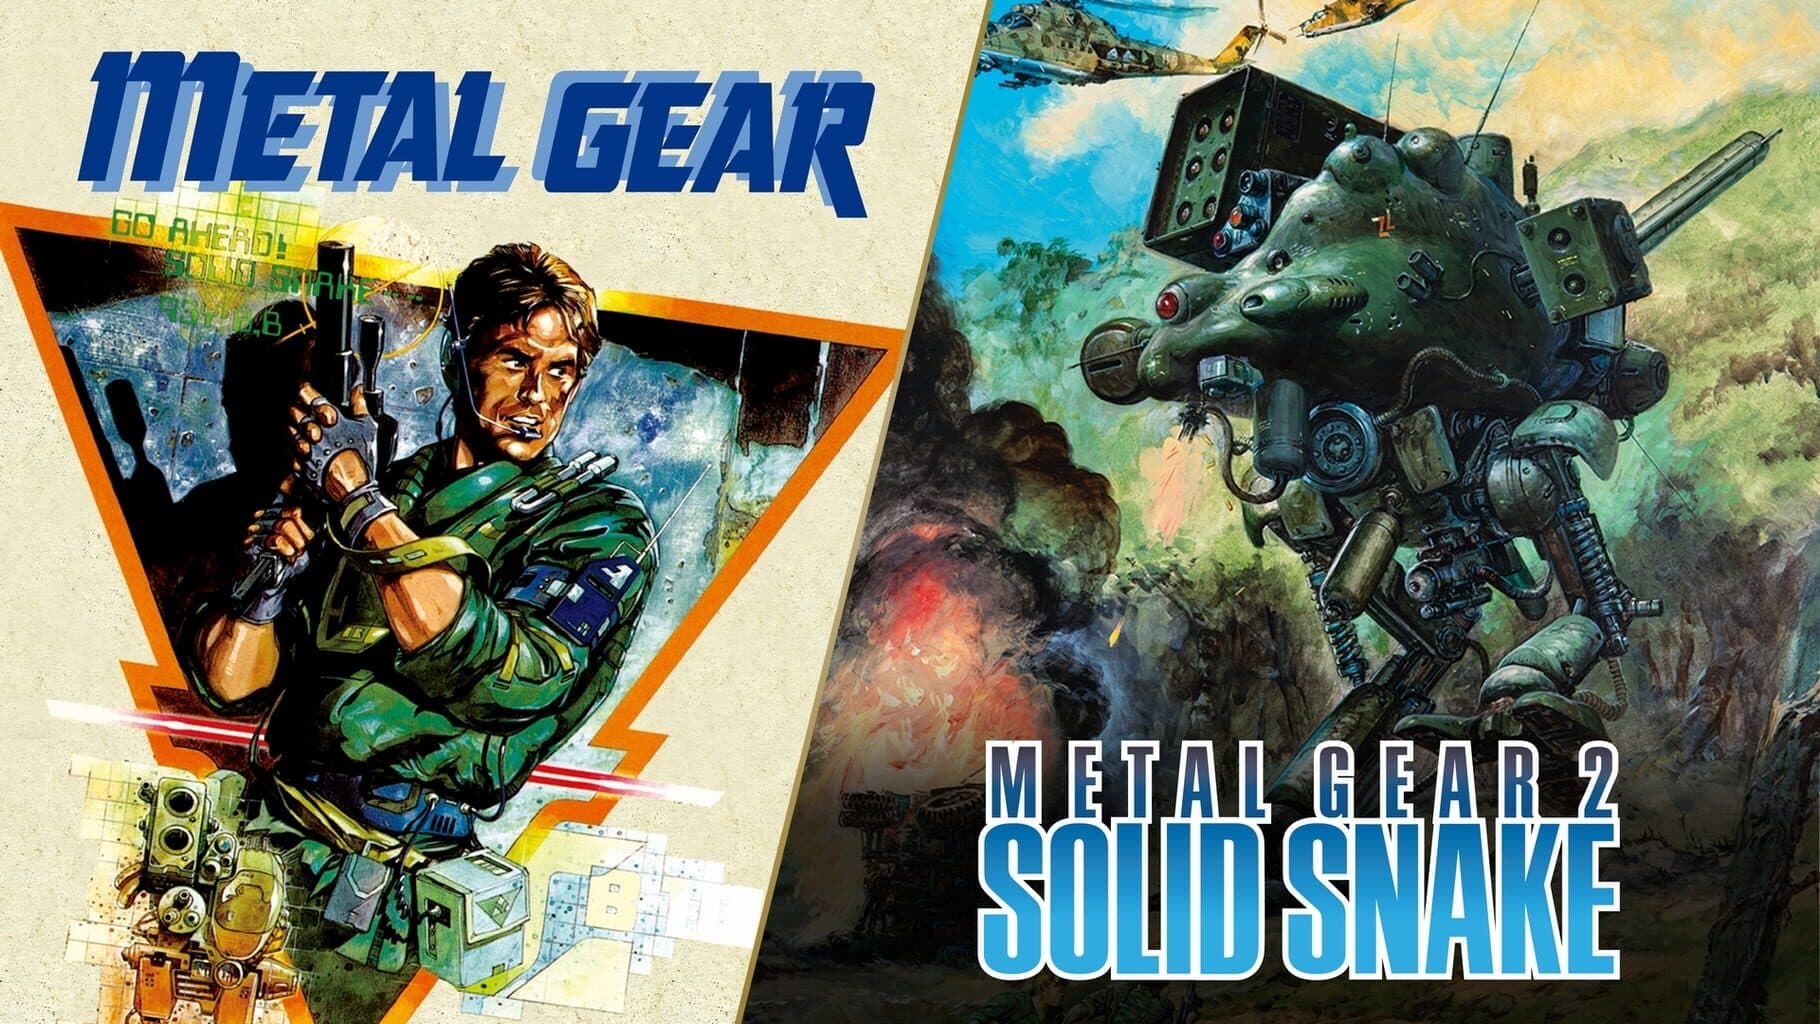 Metal Gear & Metal Gear 2: Solid Snake Image